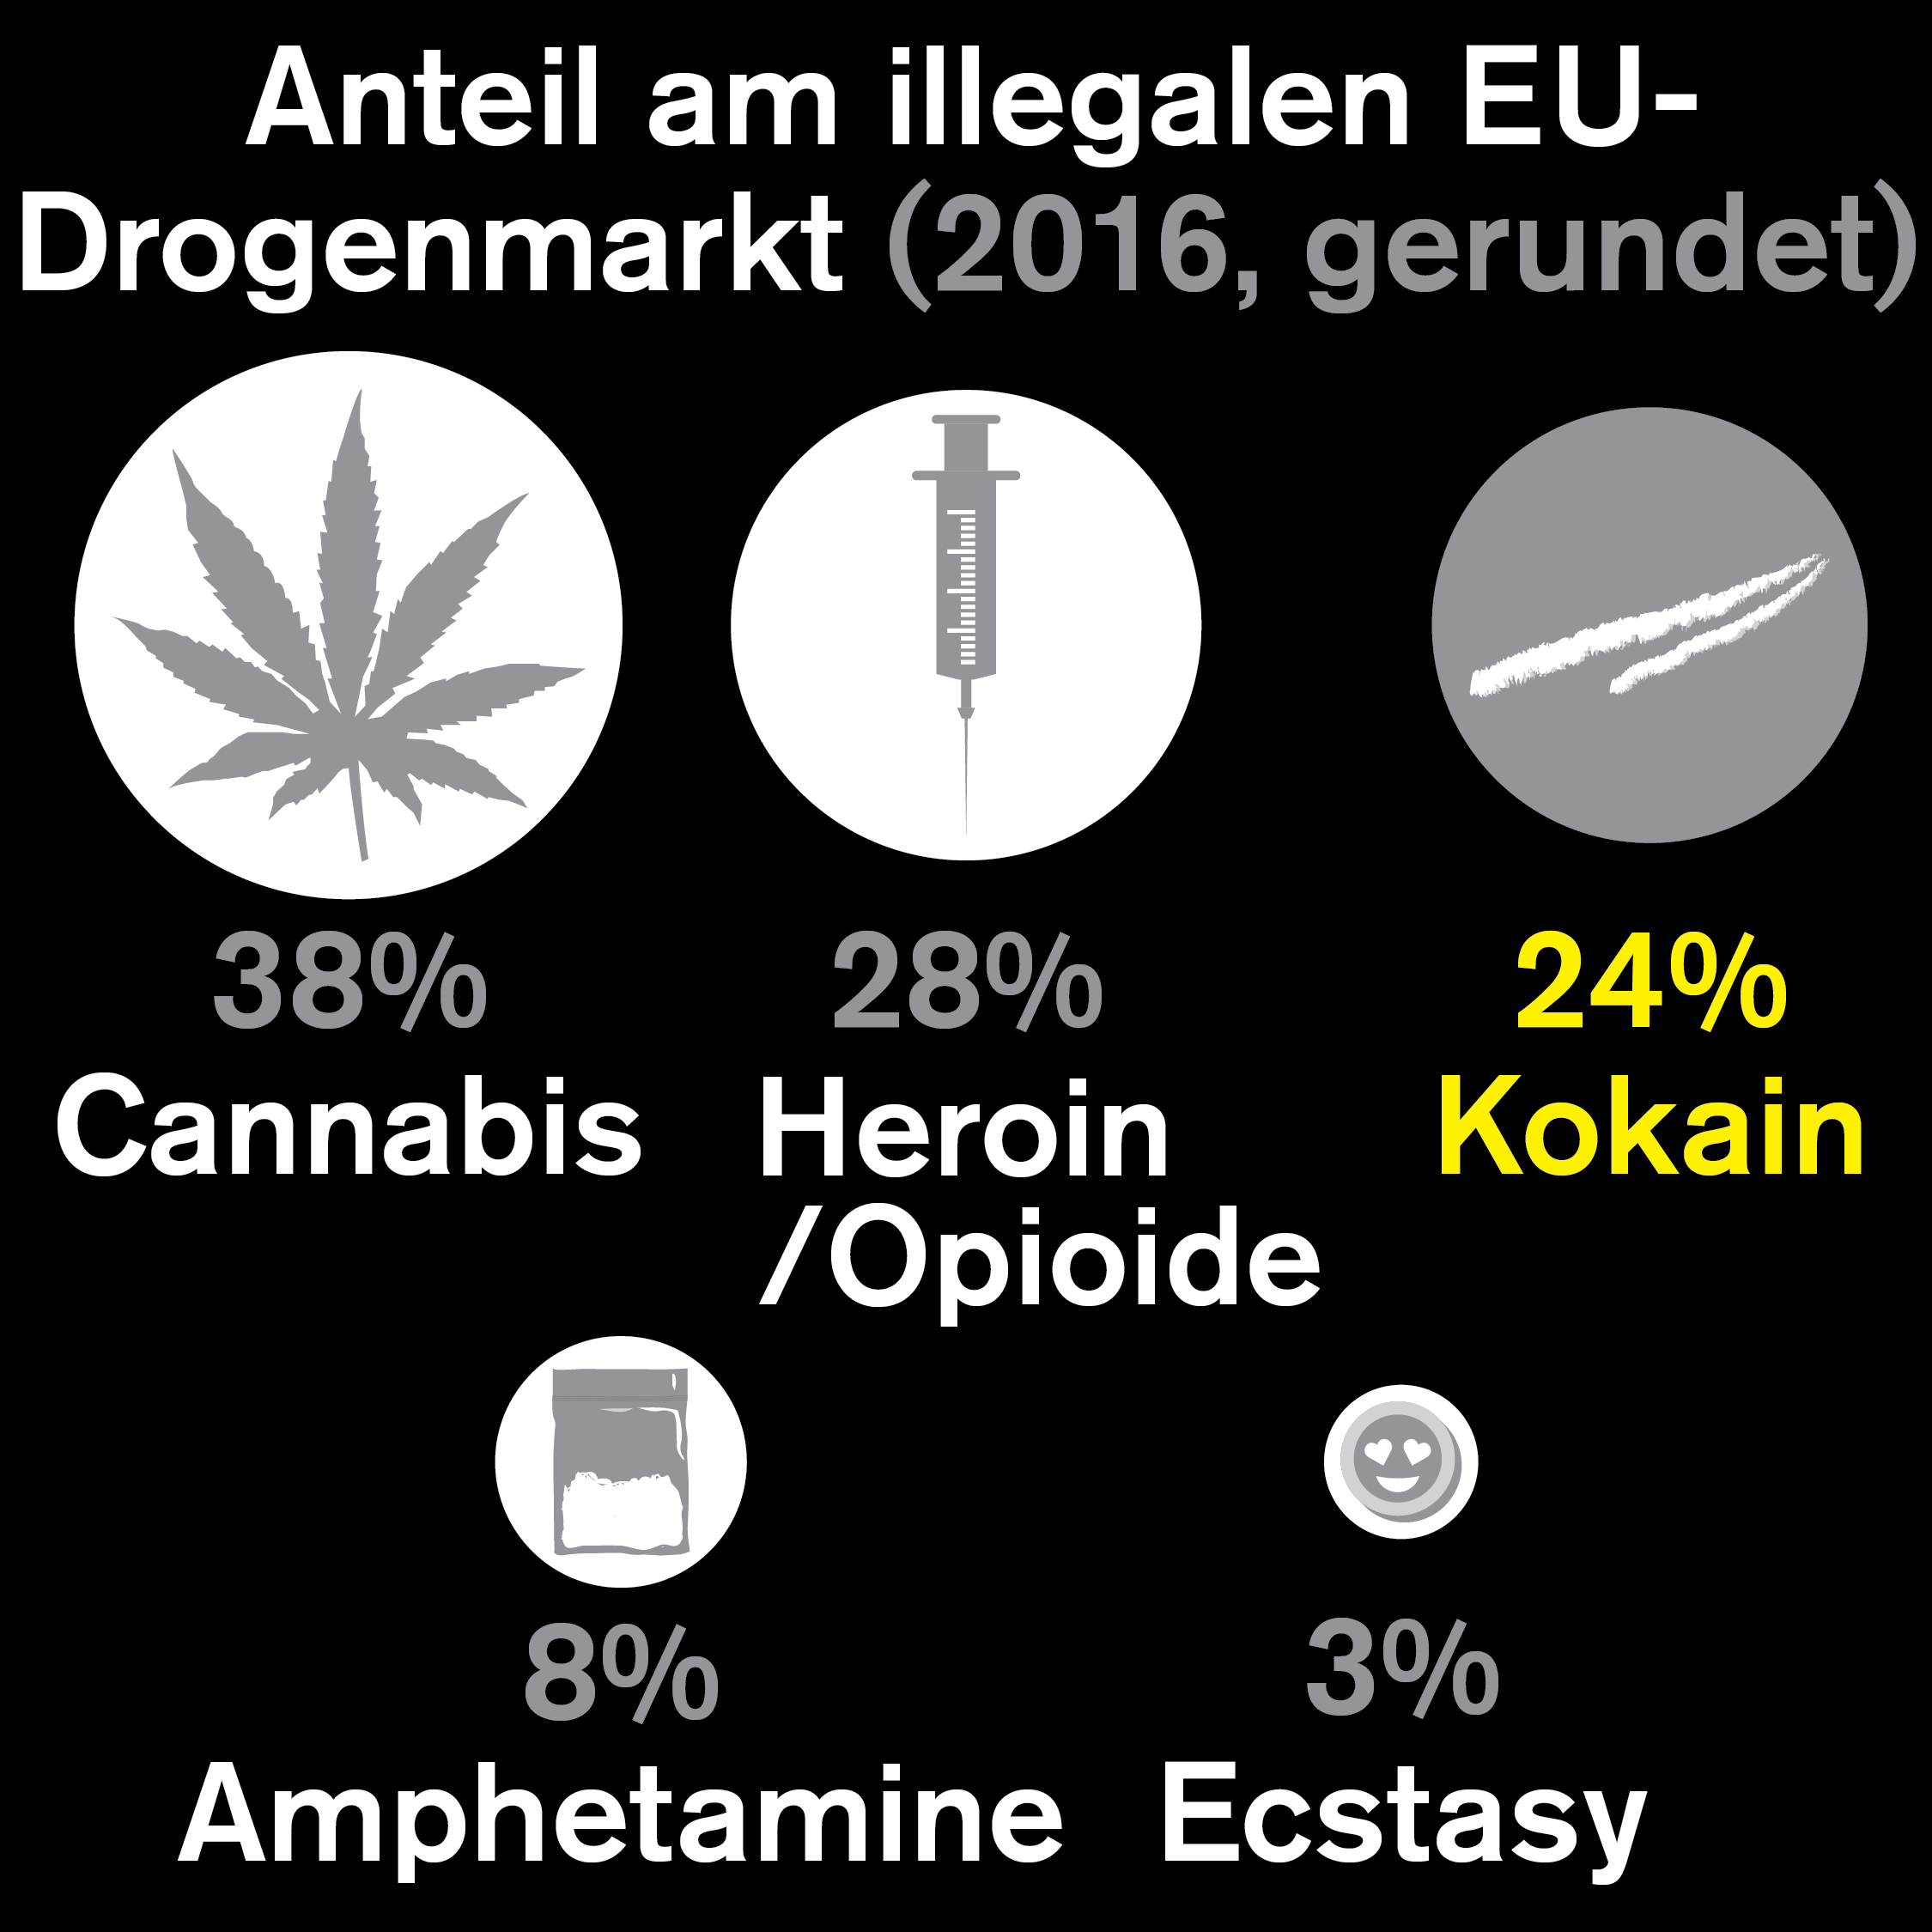 Großhandels- und Straßenpreis von Kokain in Deutschland